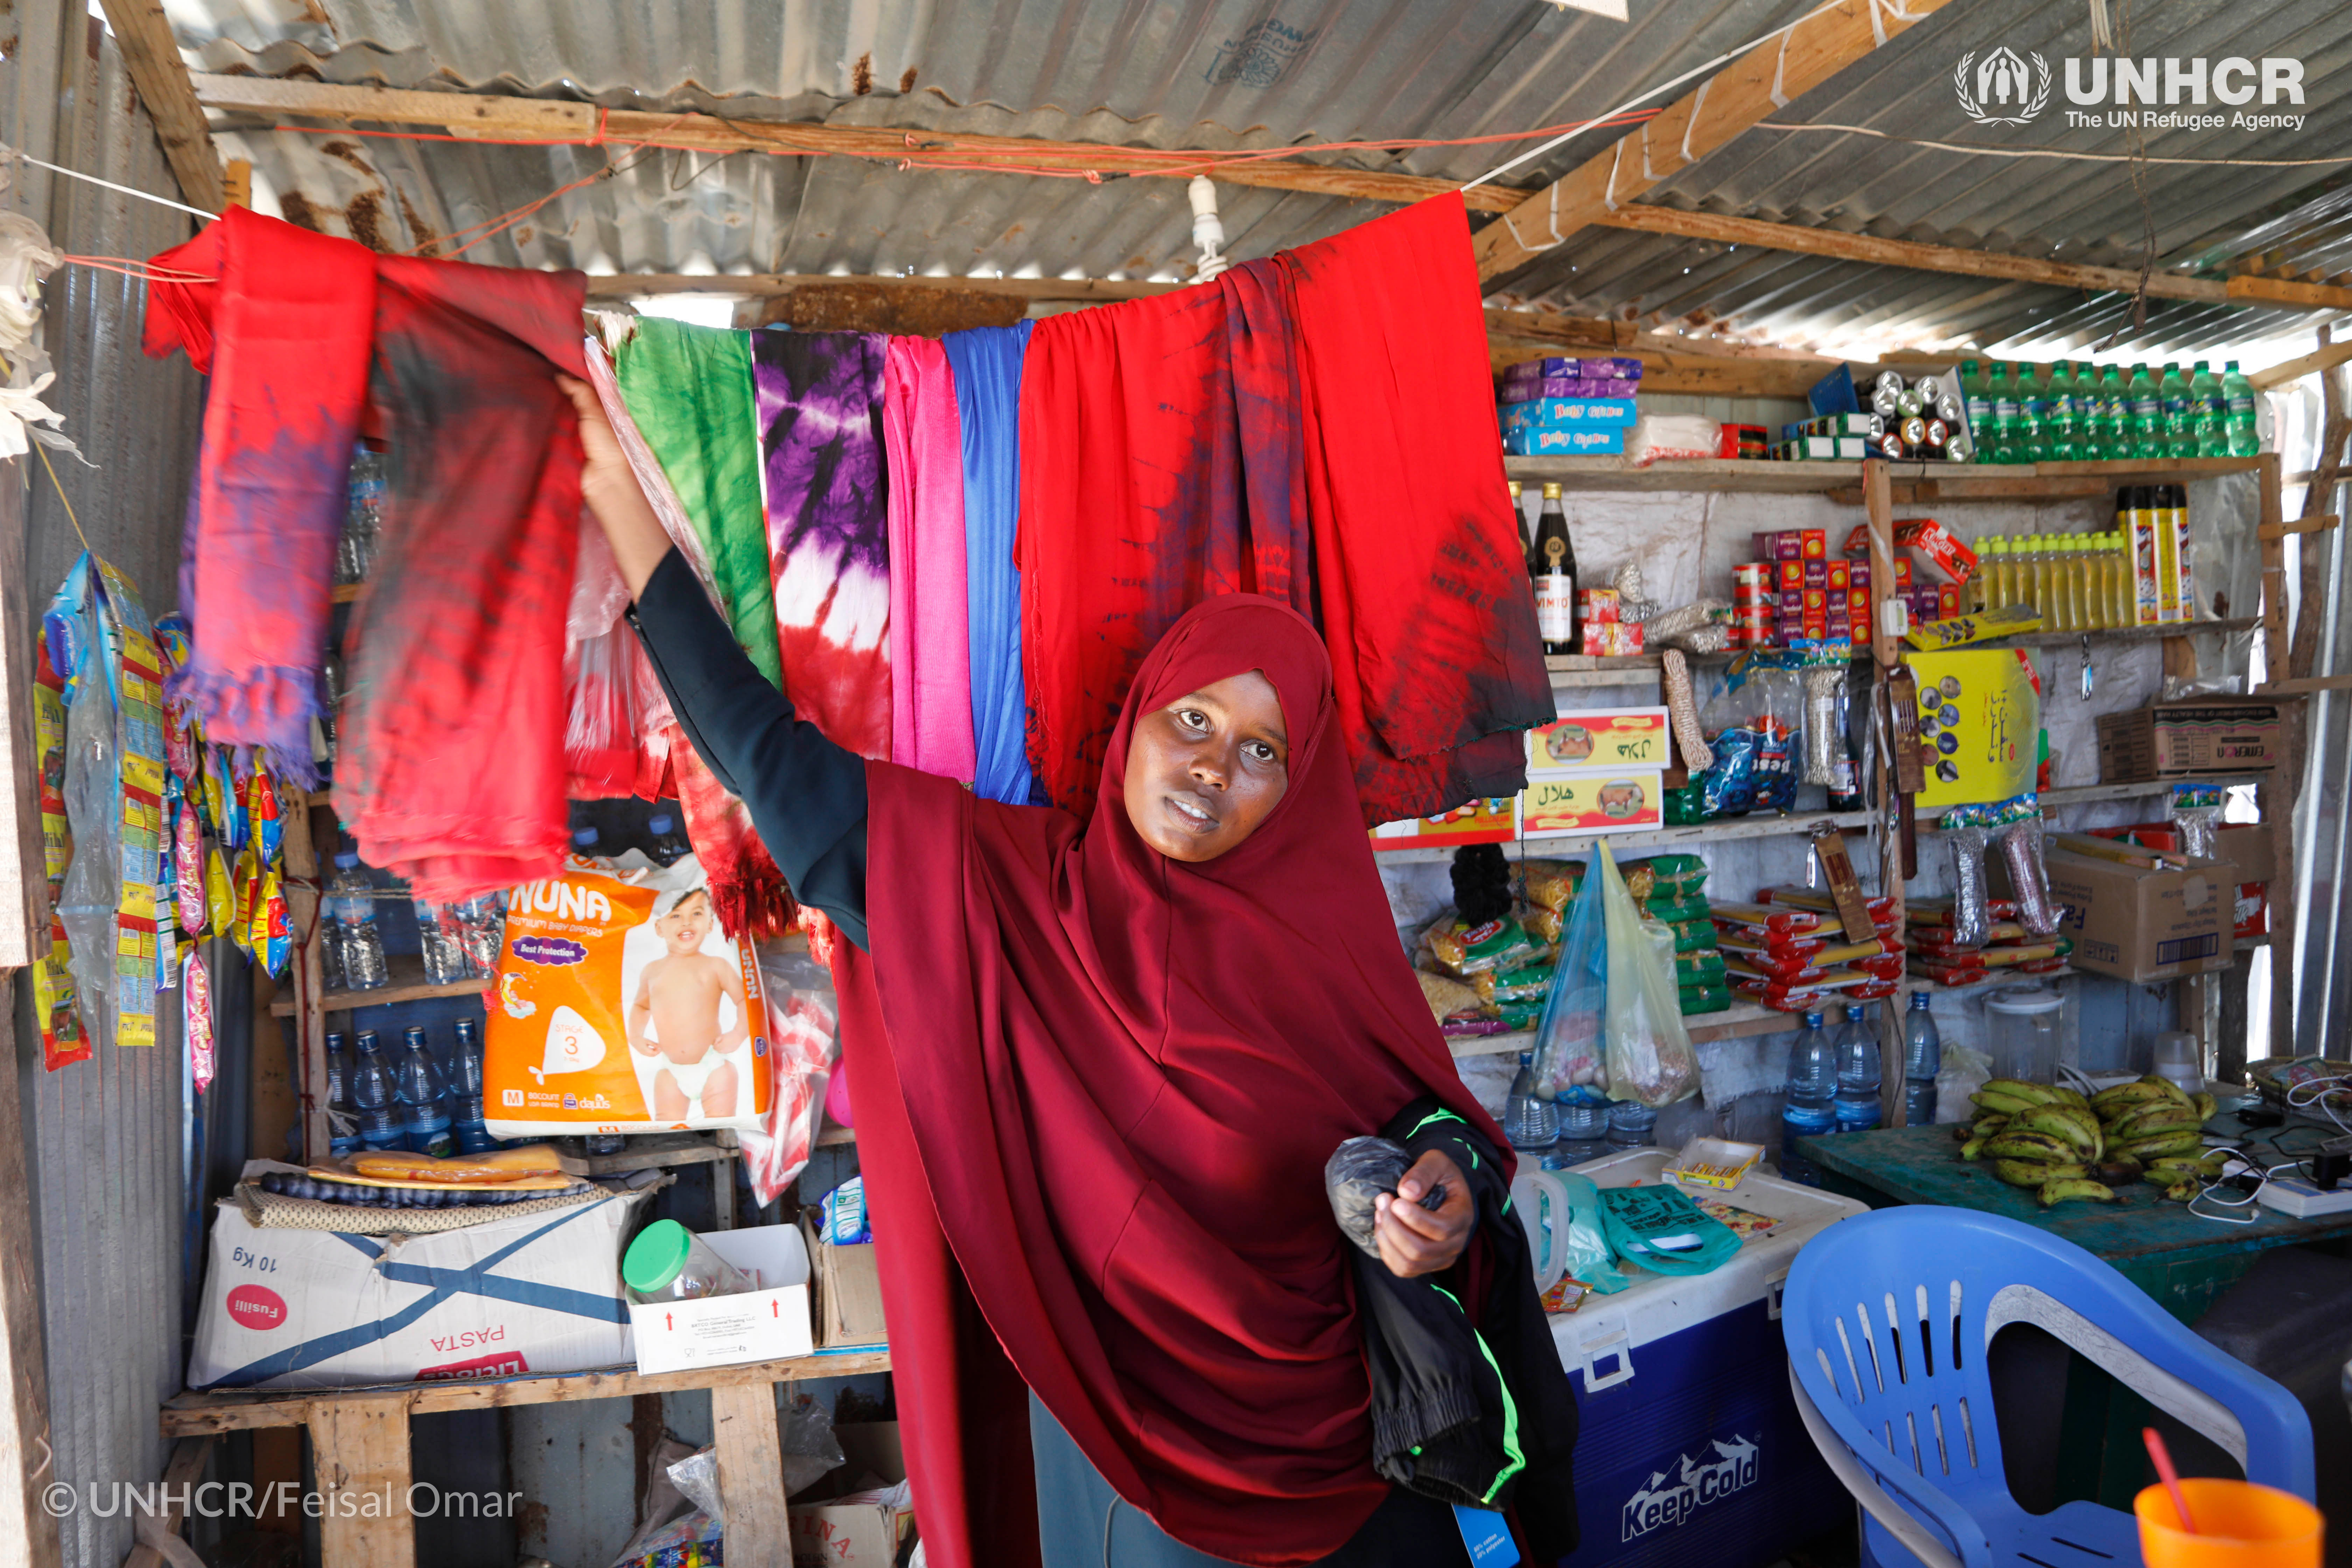 Een in Somalië teruggekeerde moeder opent tie-dye zaak. Ze leerde hoe ze tie-dye kleren moest maken en verkopen tijdens een opleidingsprogramma in het steuncentrum voor repatrianten in Kismayo, Somalië, waar UNHCR terugkerende vluchtelingen helpt hun leven weer op te bouwen. ©UNHCR/Feisal Omar